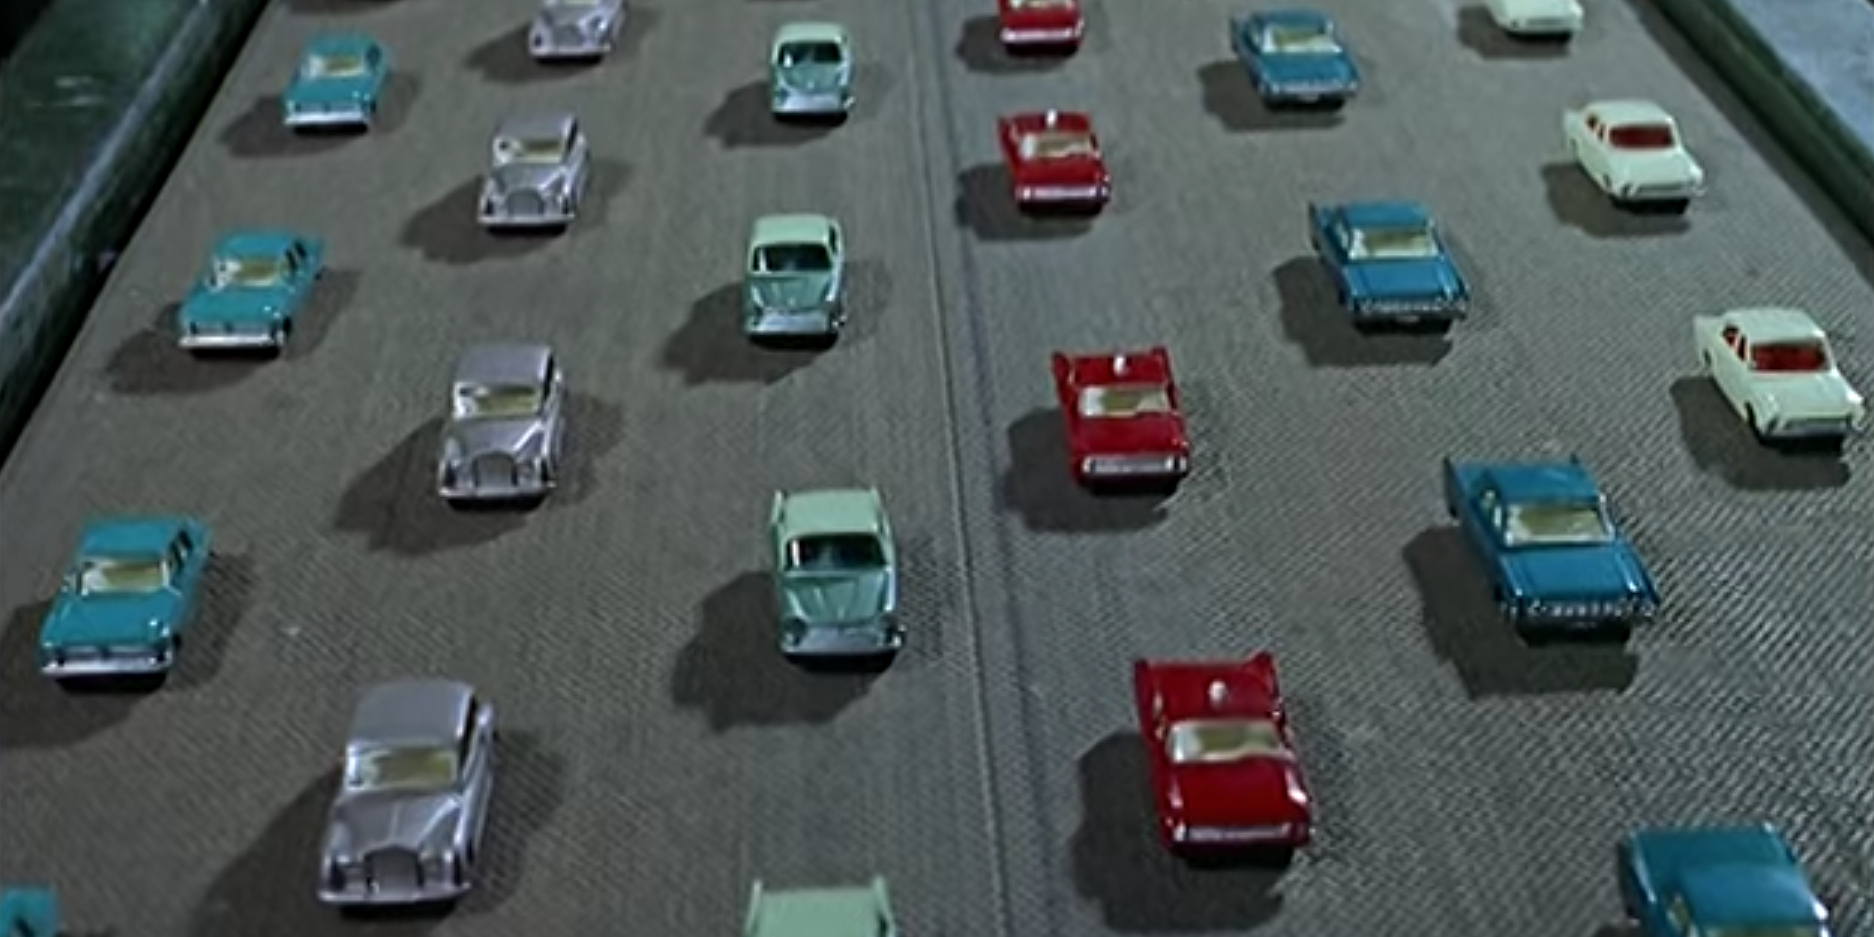 1965 matchbox cars